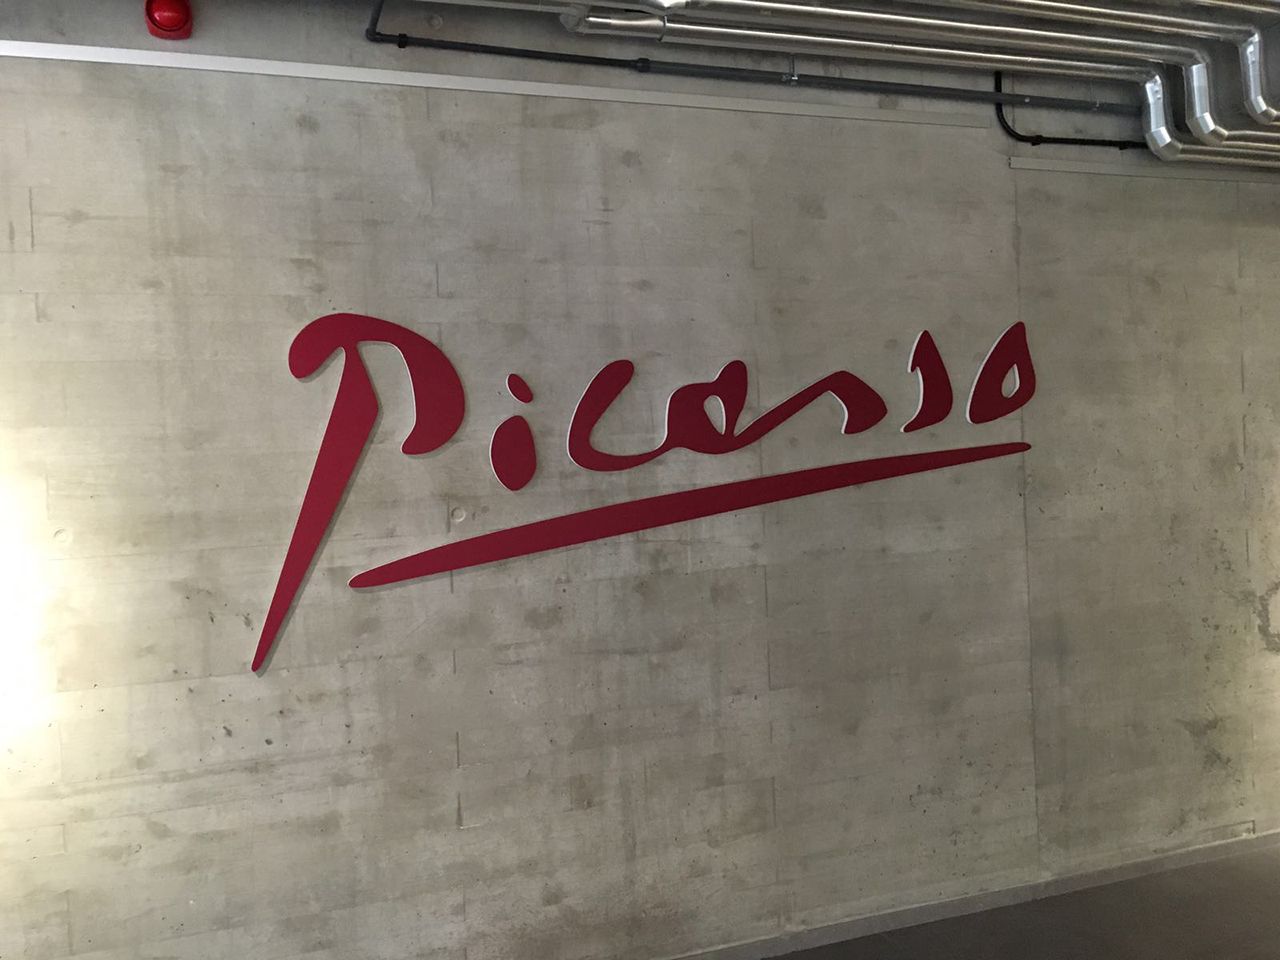 Letras en relieve sobre pared para exposición Picasso